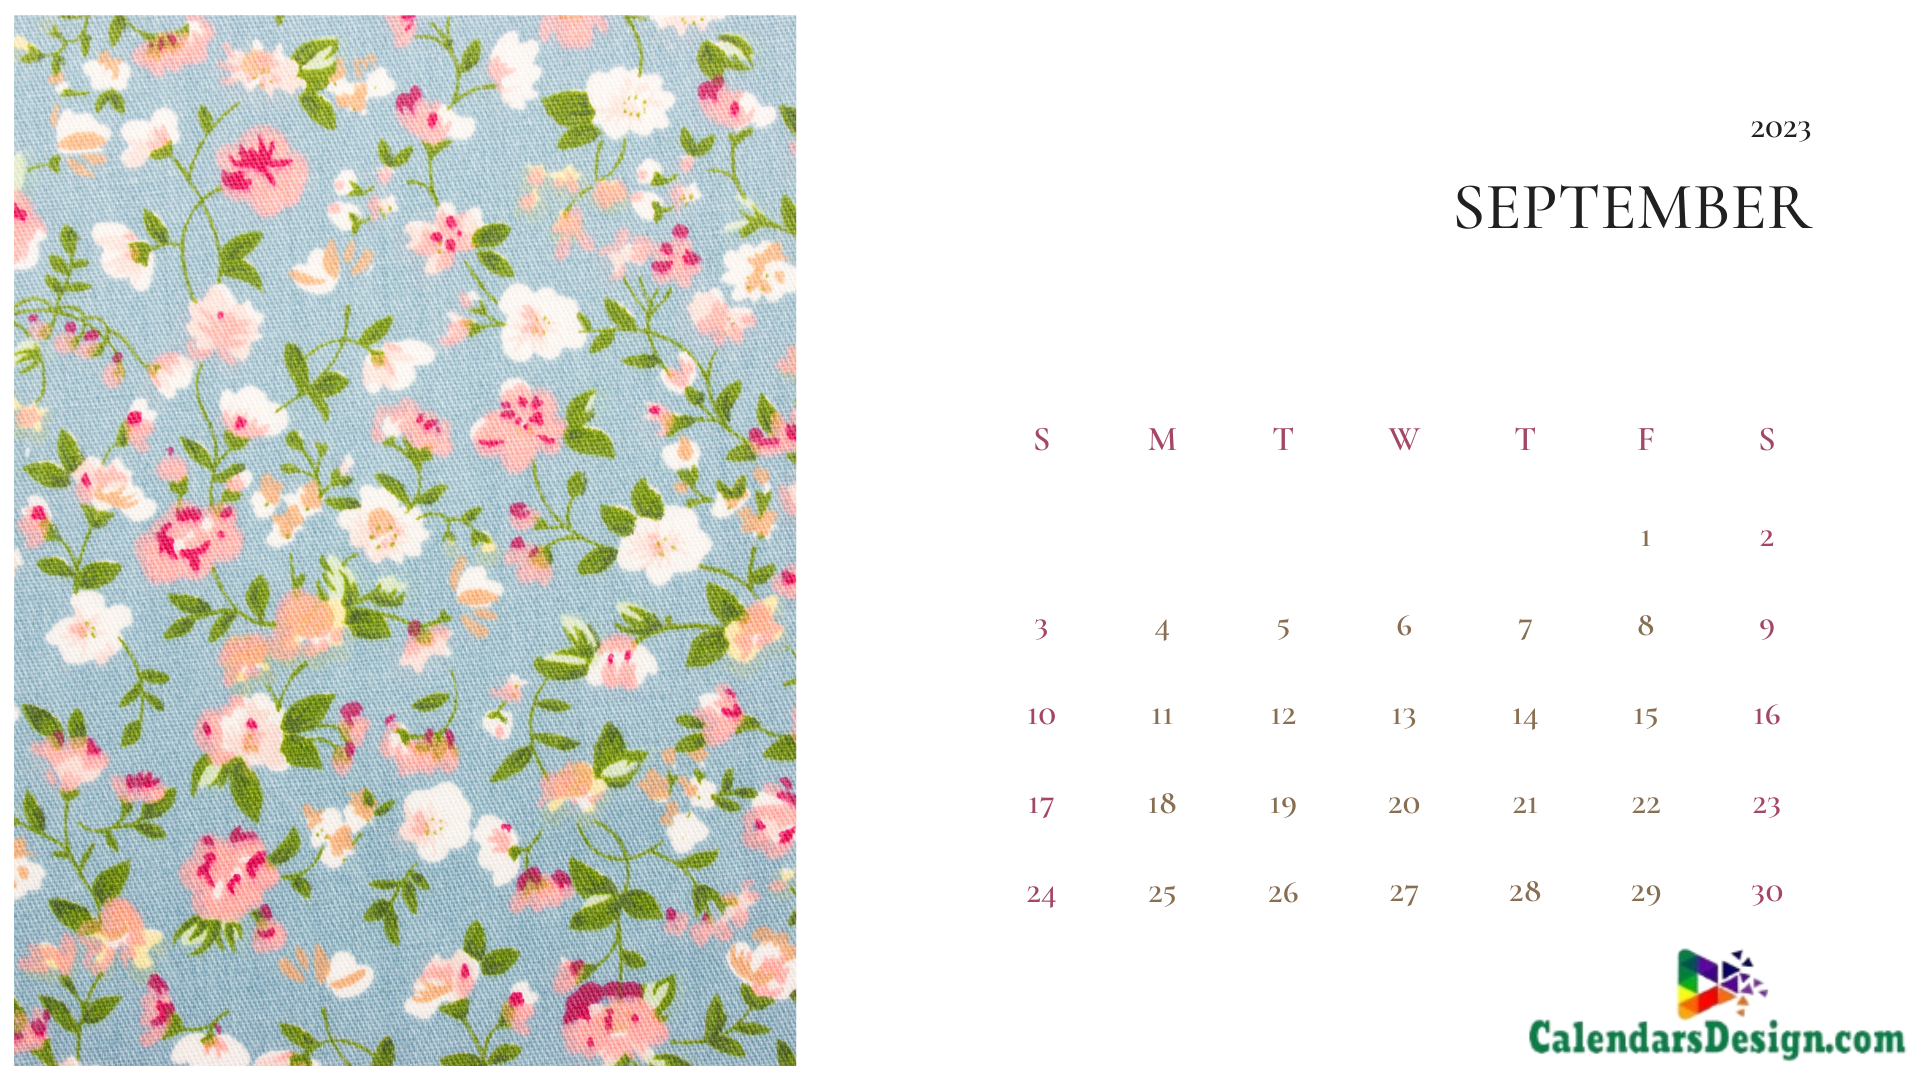 September 2023 Calendar Cute Designs